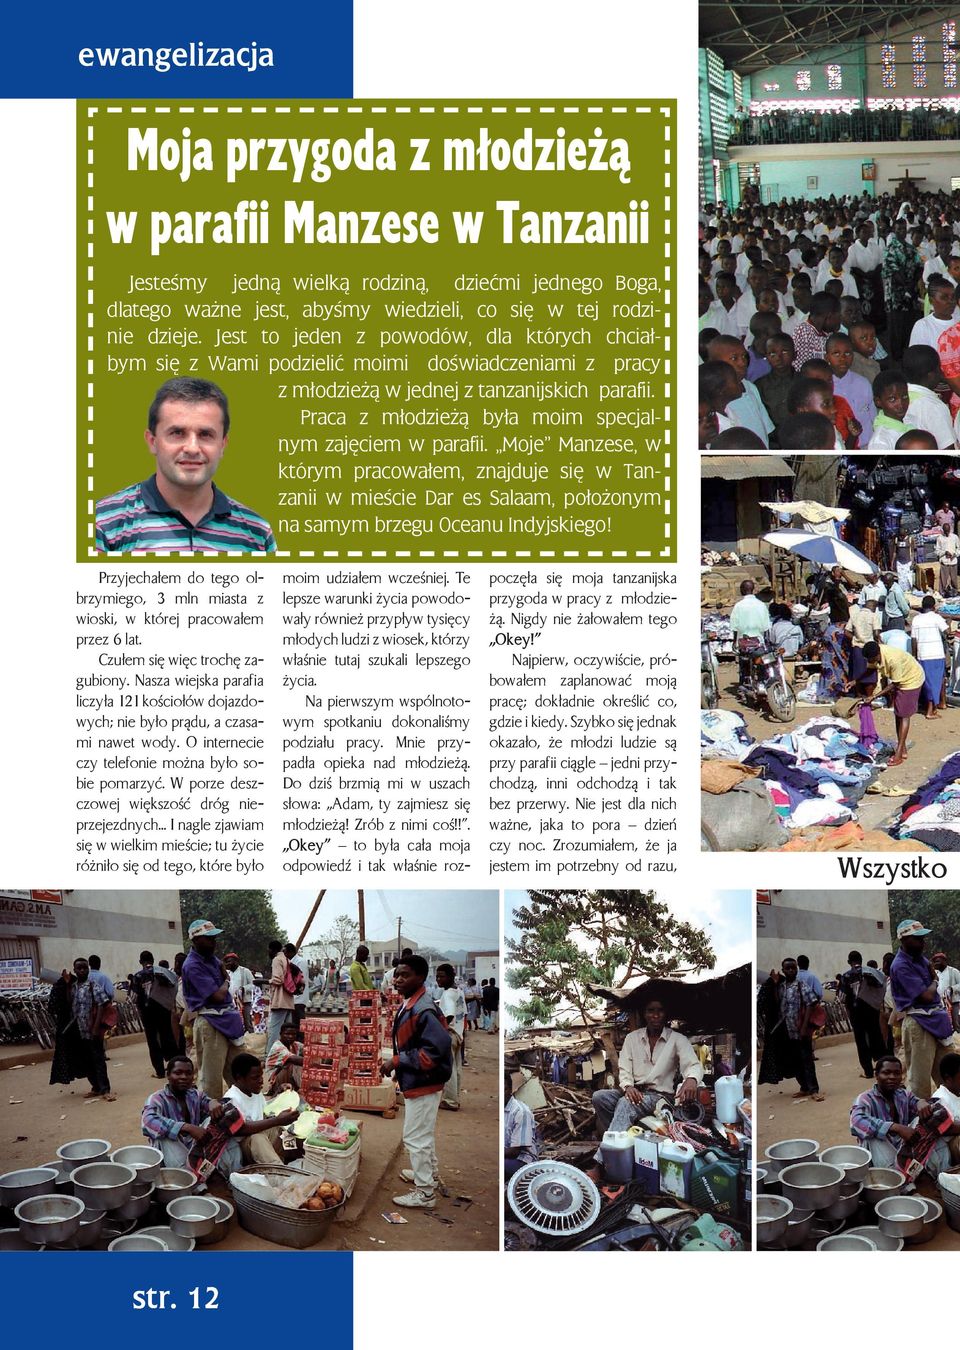 Praca z młodzieżą była moim specjal- nym zajęciem w parafii. Moje Manzese, w którym pracowałem, znajduje się w Tanzanii w mieście Dar es Salaam, położonym na samym brzegu Oceanu Indyjskiego!